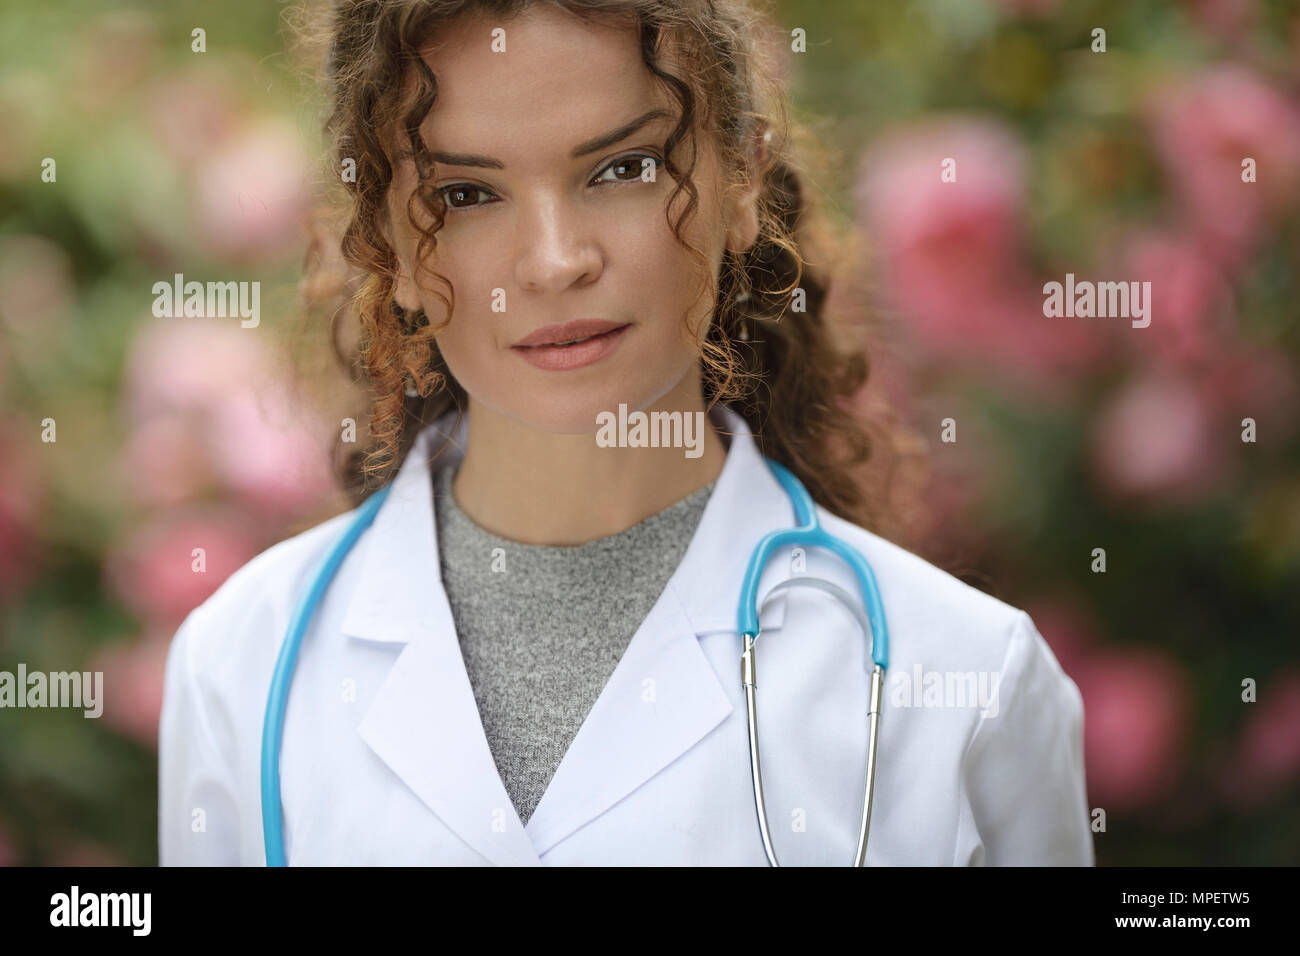 Ritratto di una giovane donna, medico, professionista sanitario, medico, medico indossando un camice in naturale all'aperto con impostazioni blosso Foto Stock